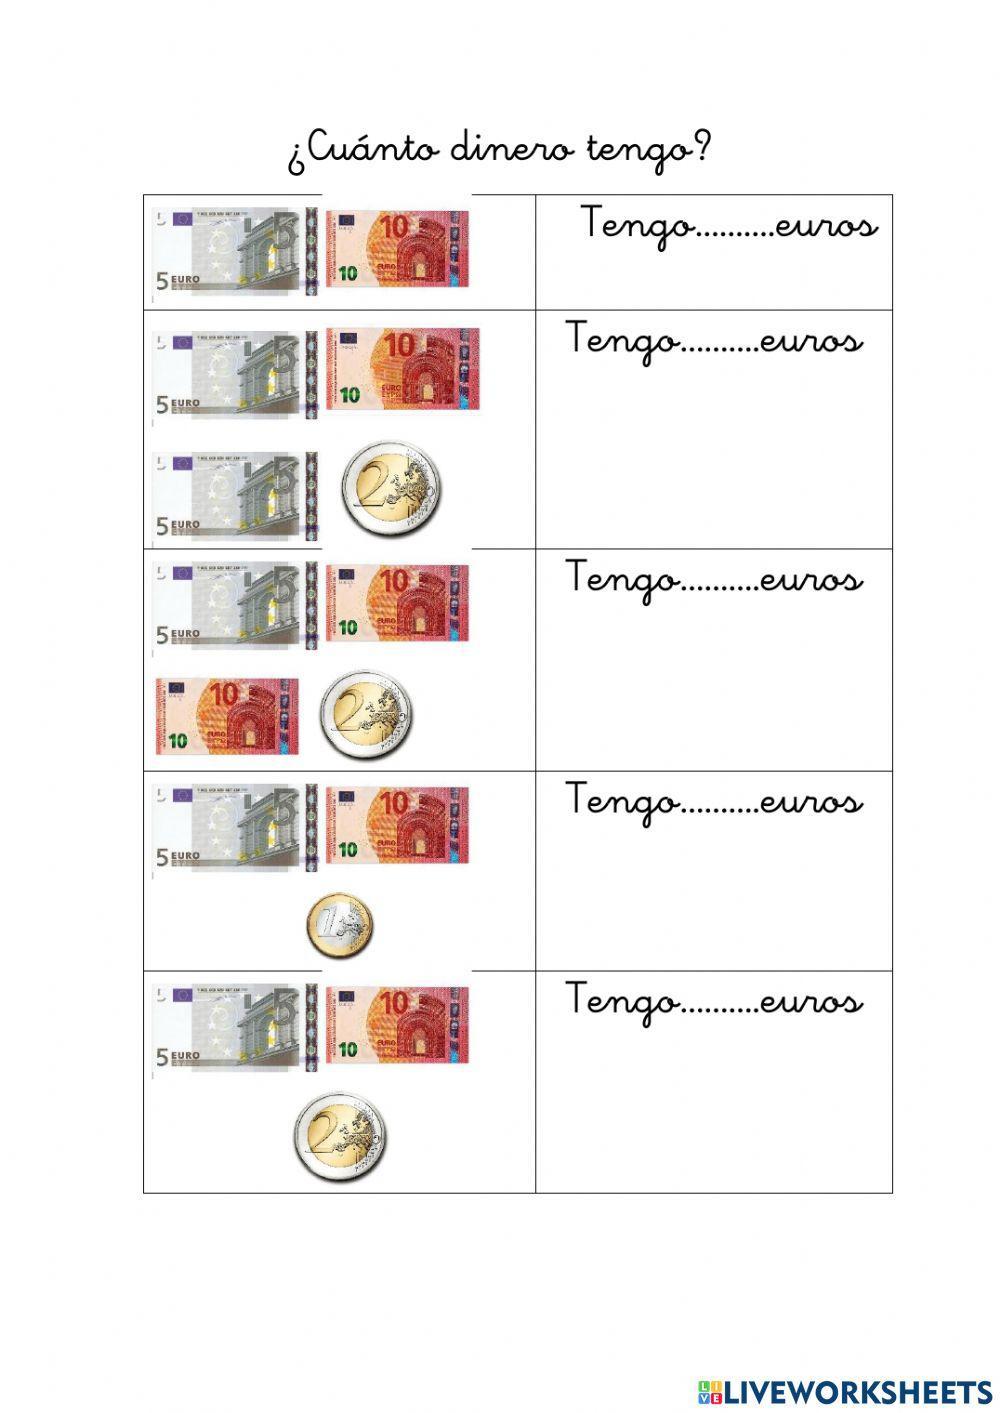 Billetes de 10, 5 euros y monedas de 1 y 2 euros